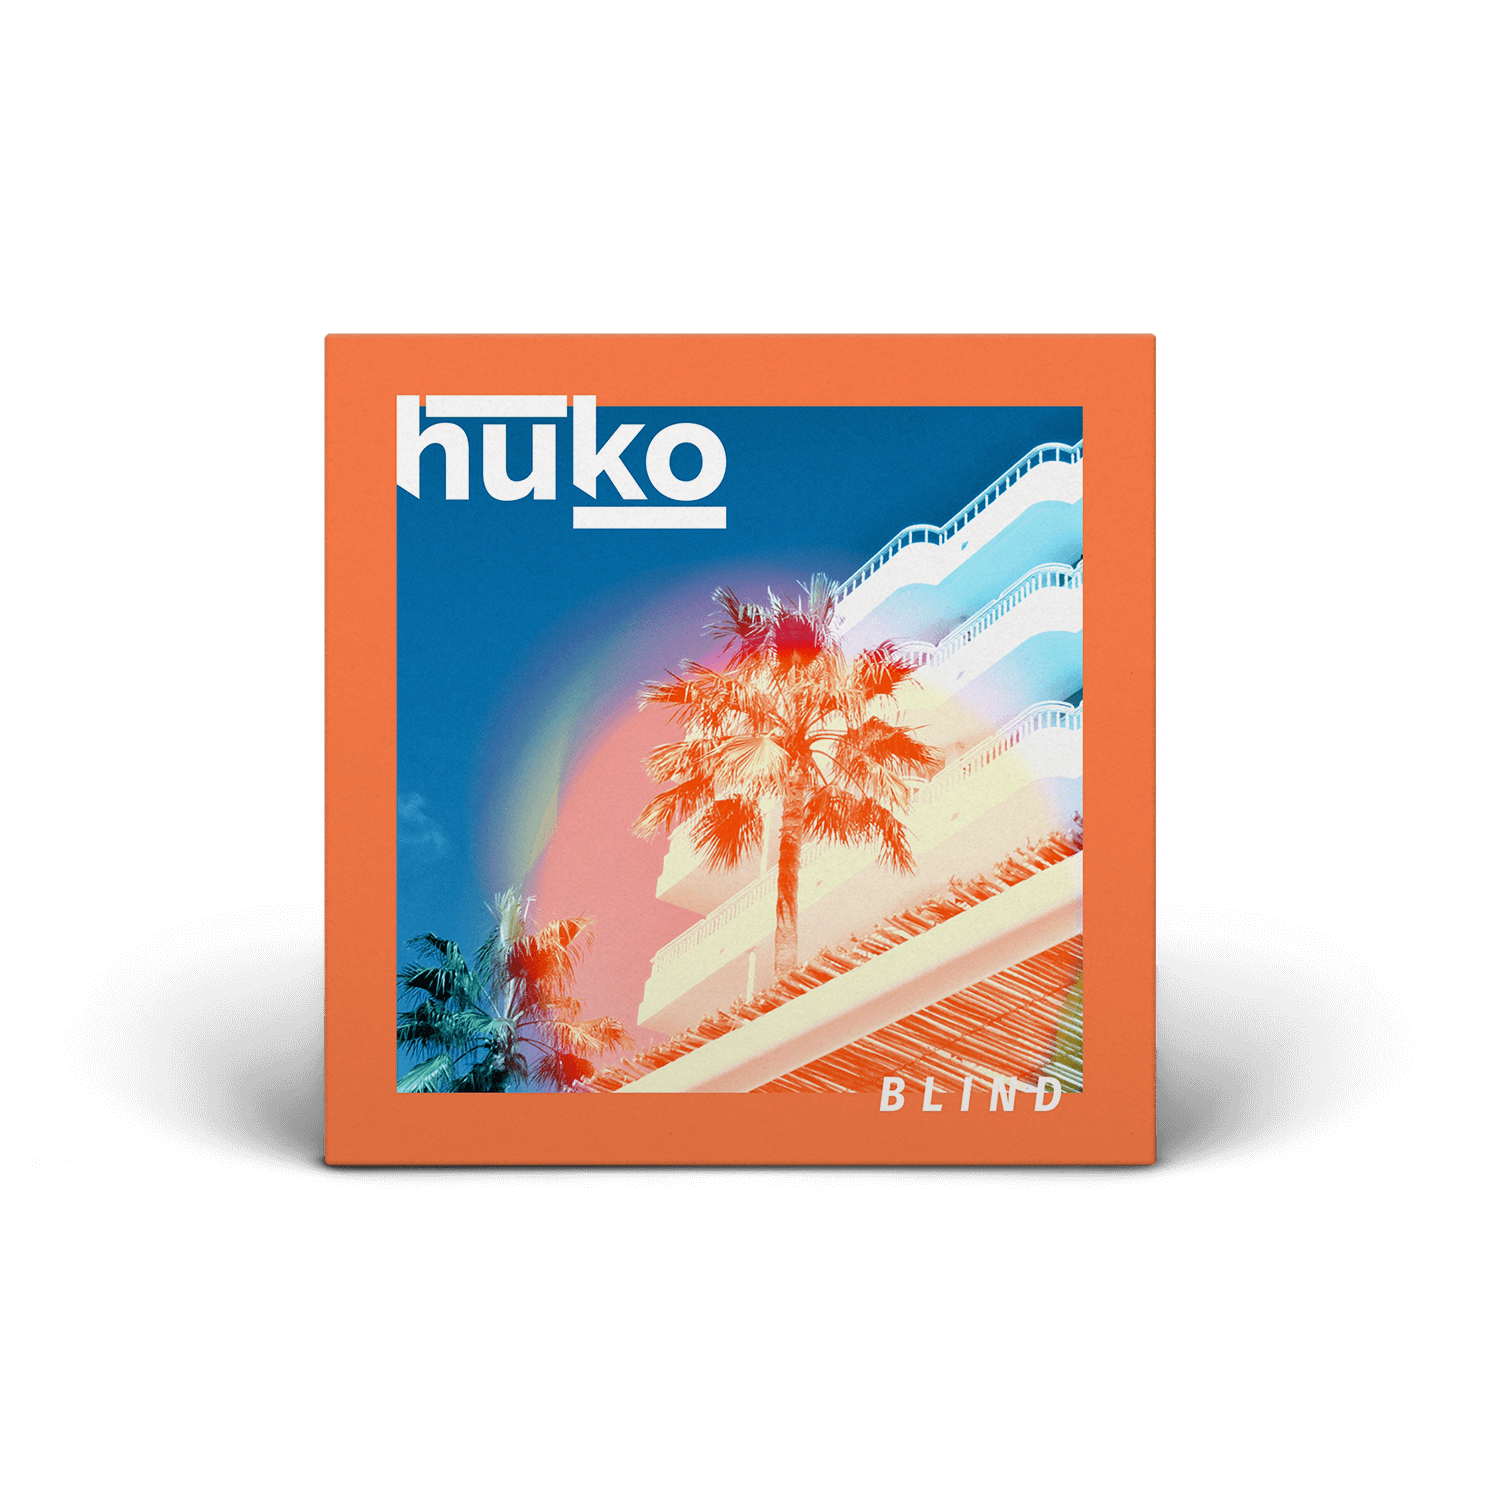 HUKO - Blind - Digital